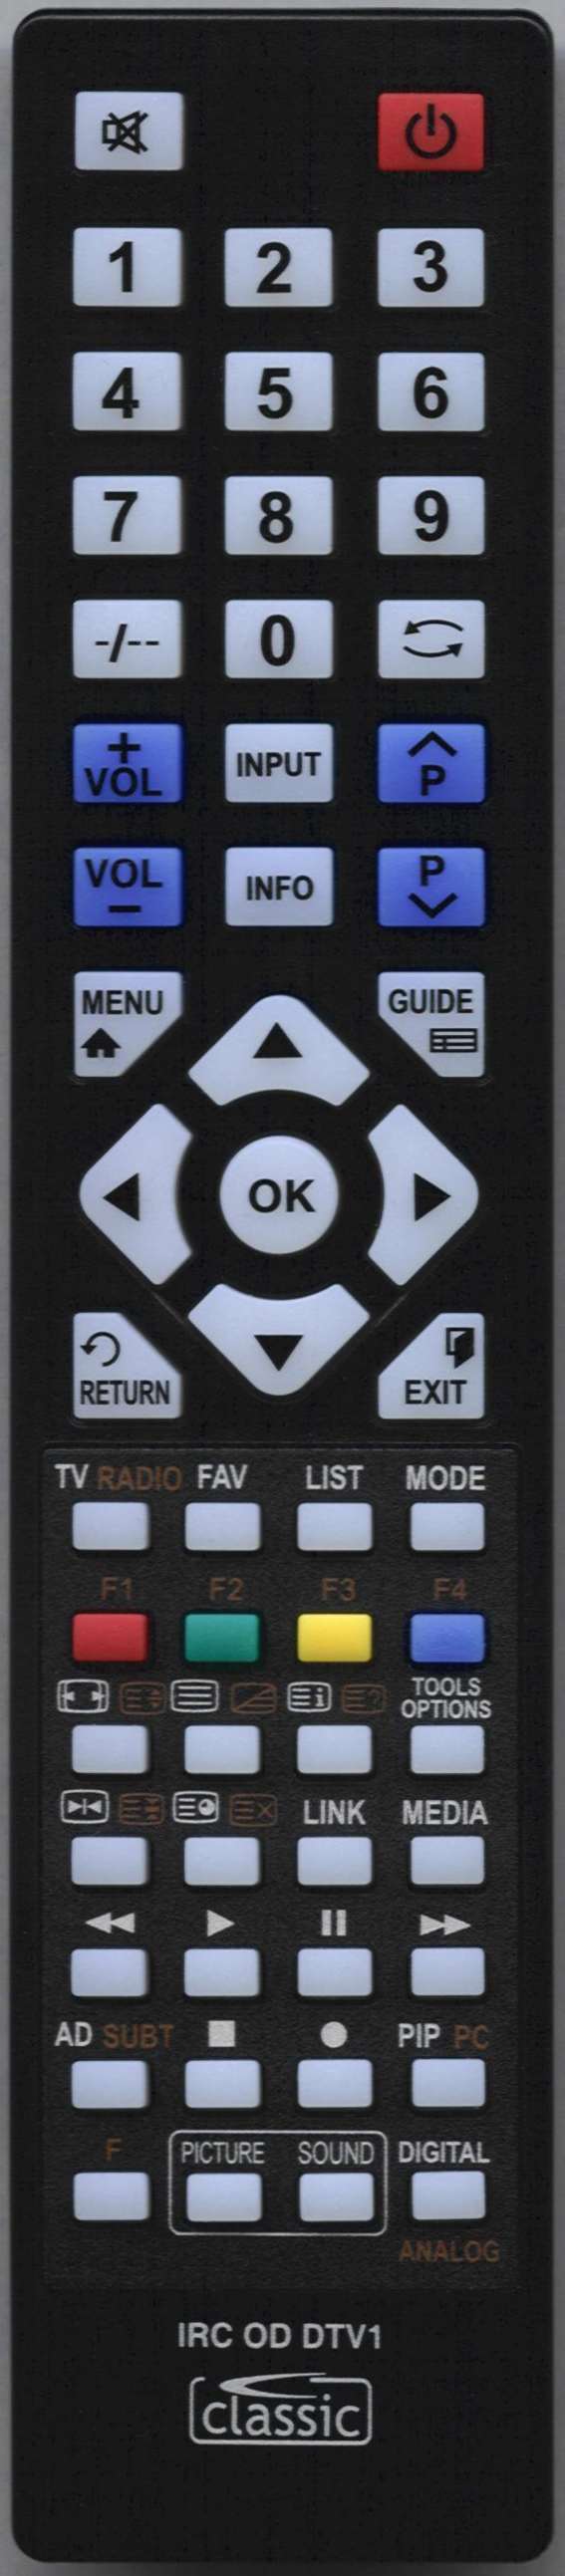 SONY KDL32E5500 Remote Control Alternative